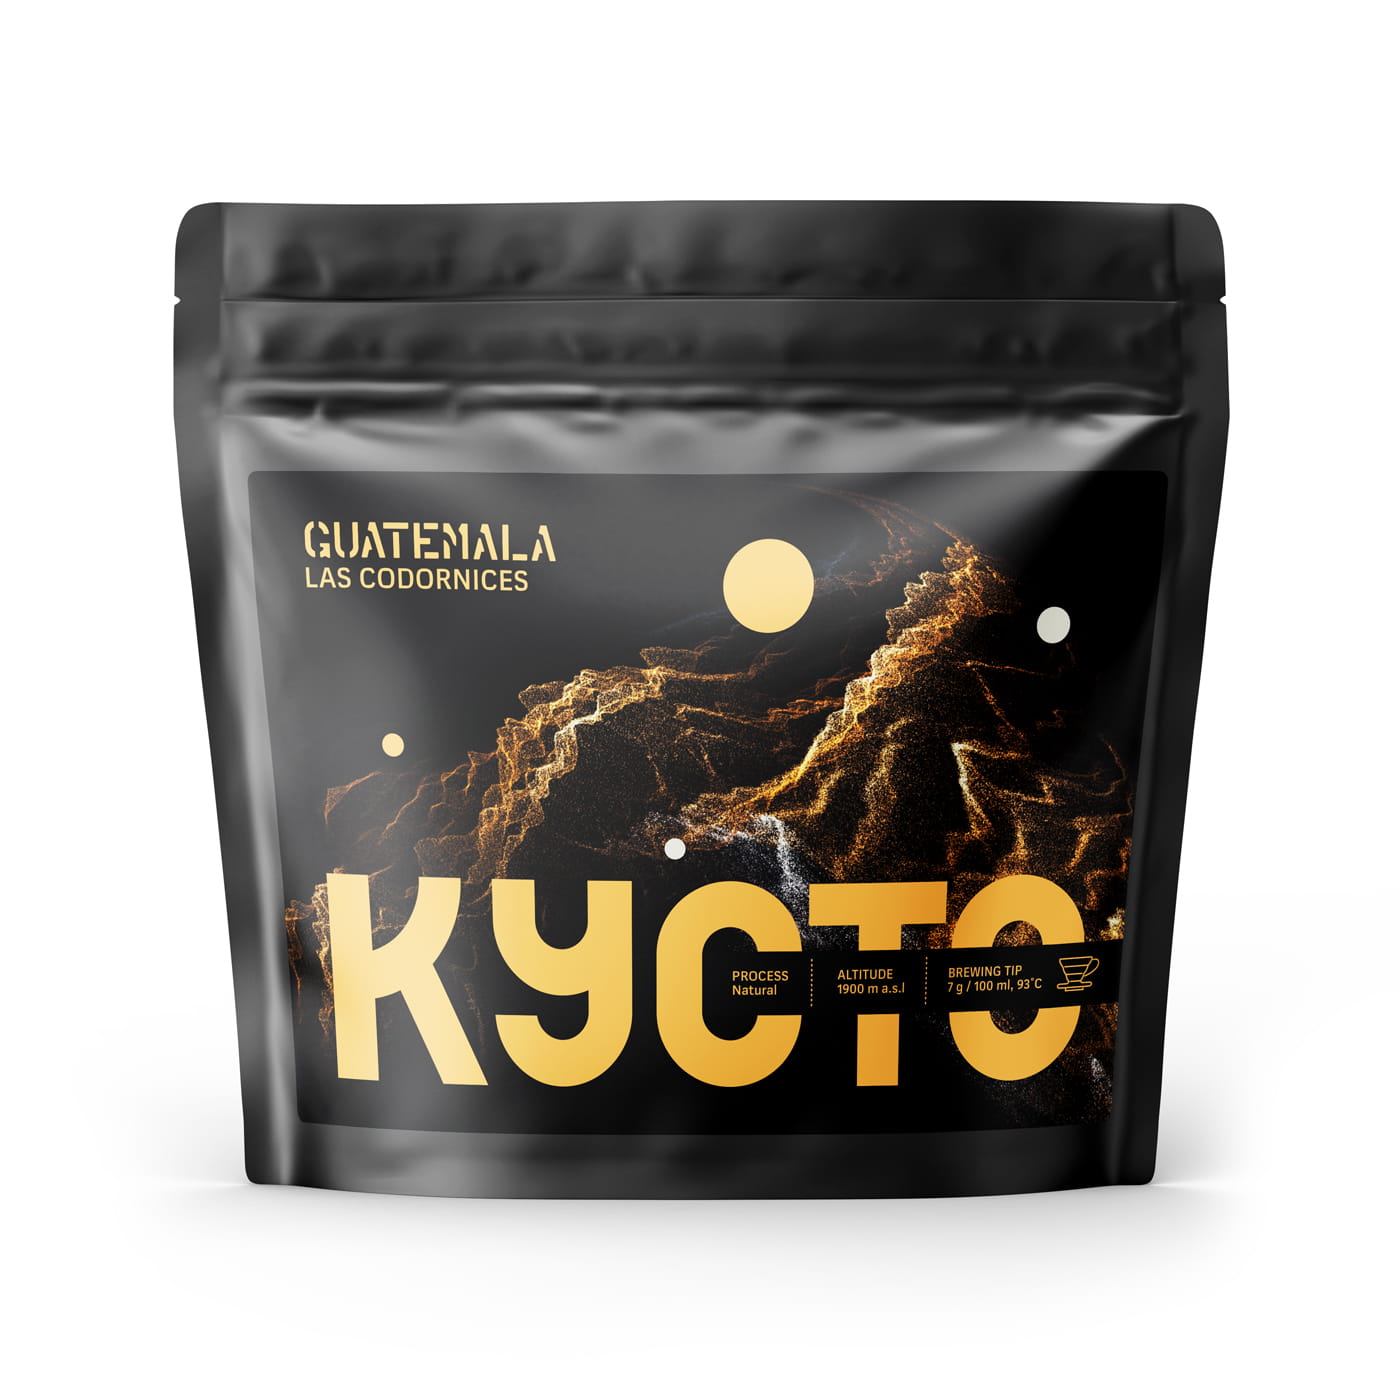 KYOTO-Guatemala-Las-Codornices-Packshot-250-g-FRONT